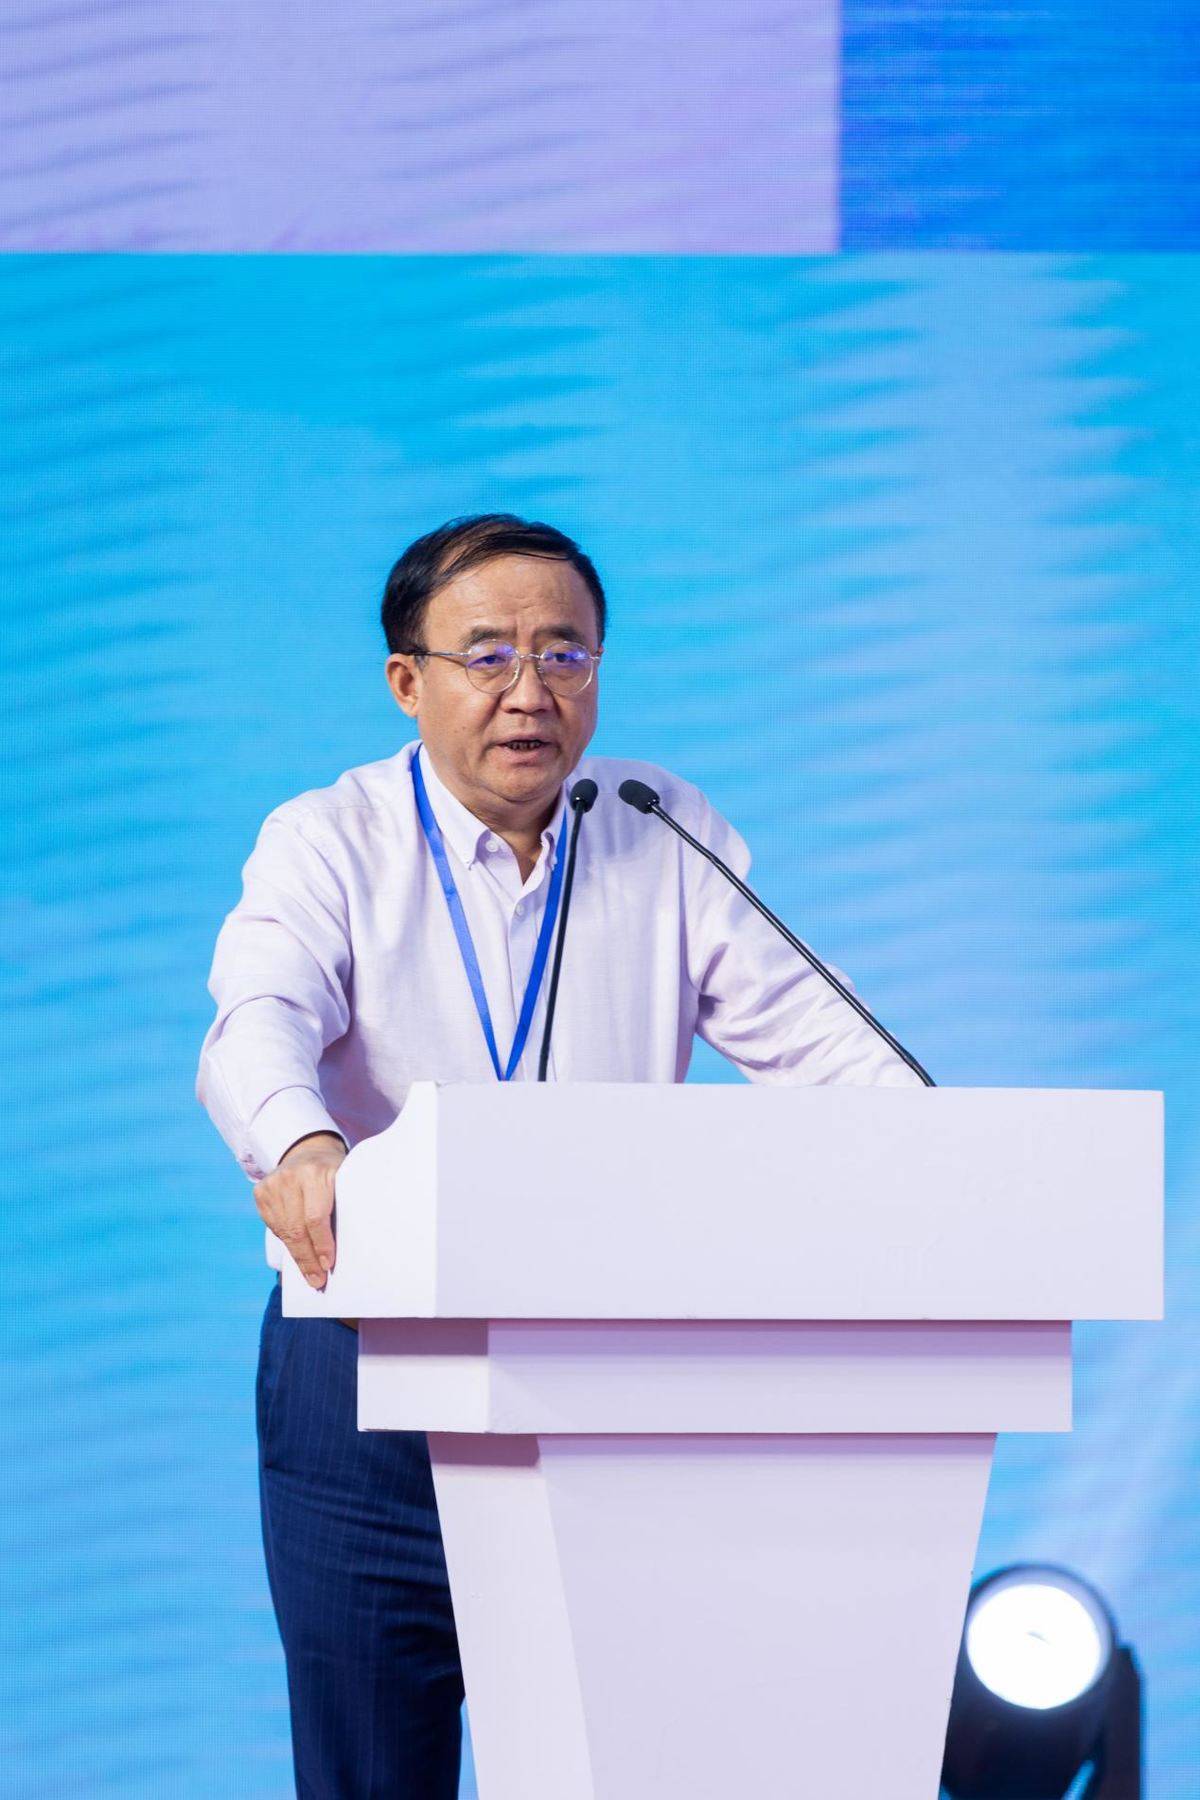 聚集产业链“智囊” 北京甲醇能源峰会共话发展新路径